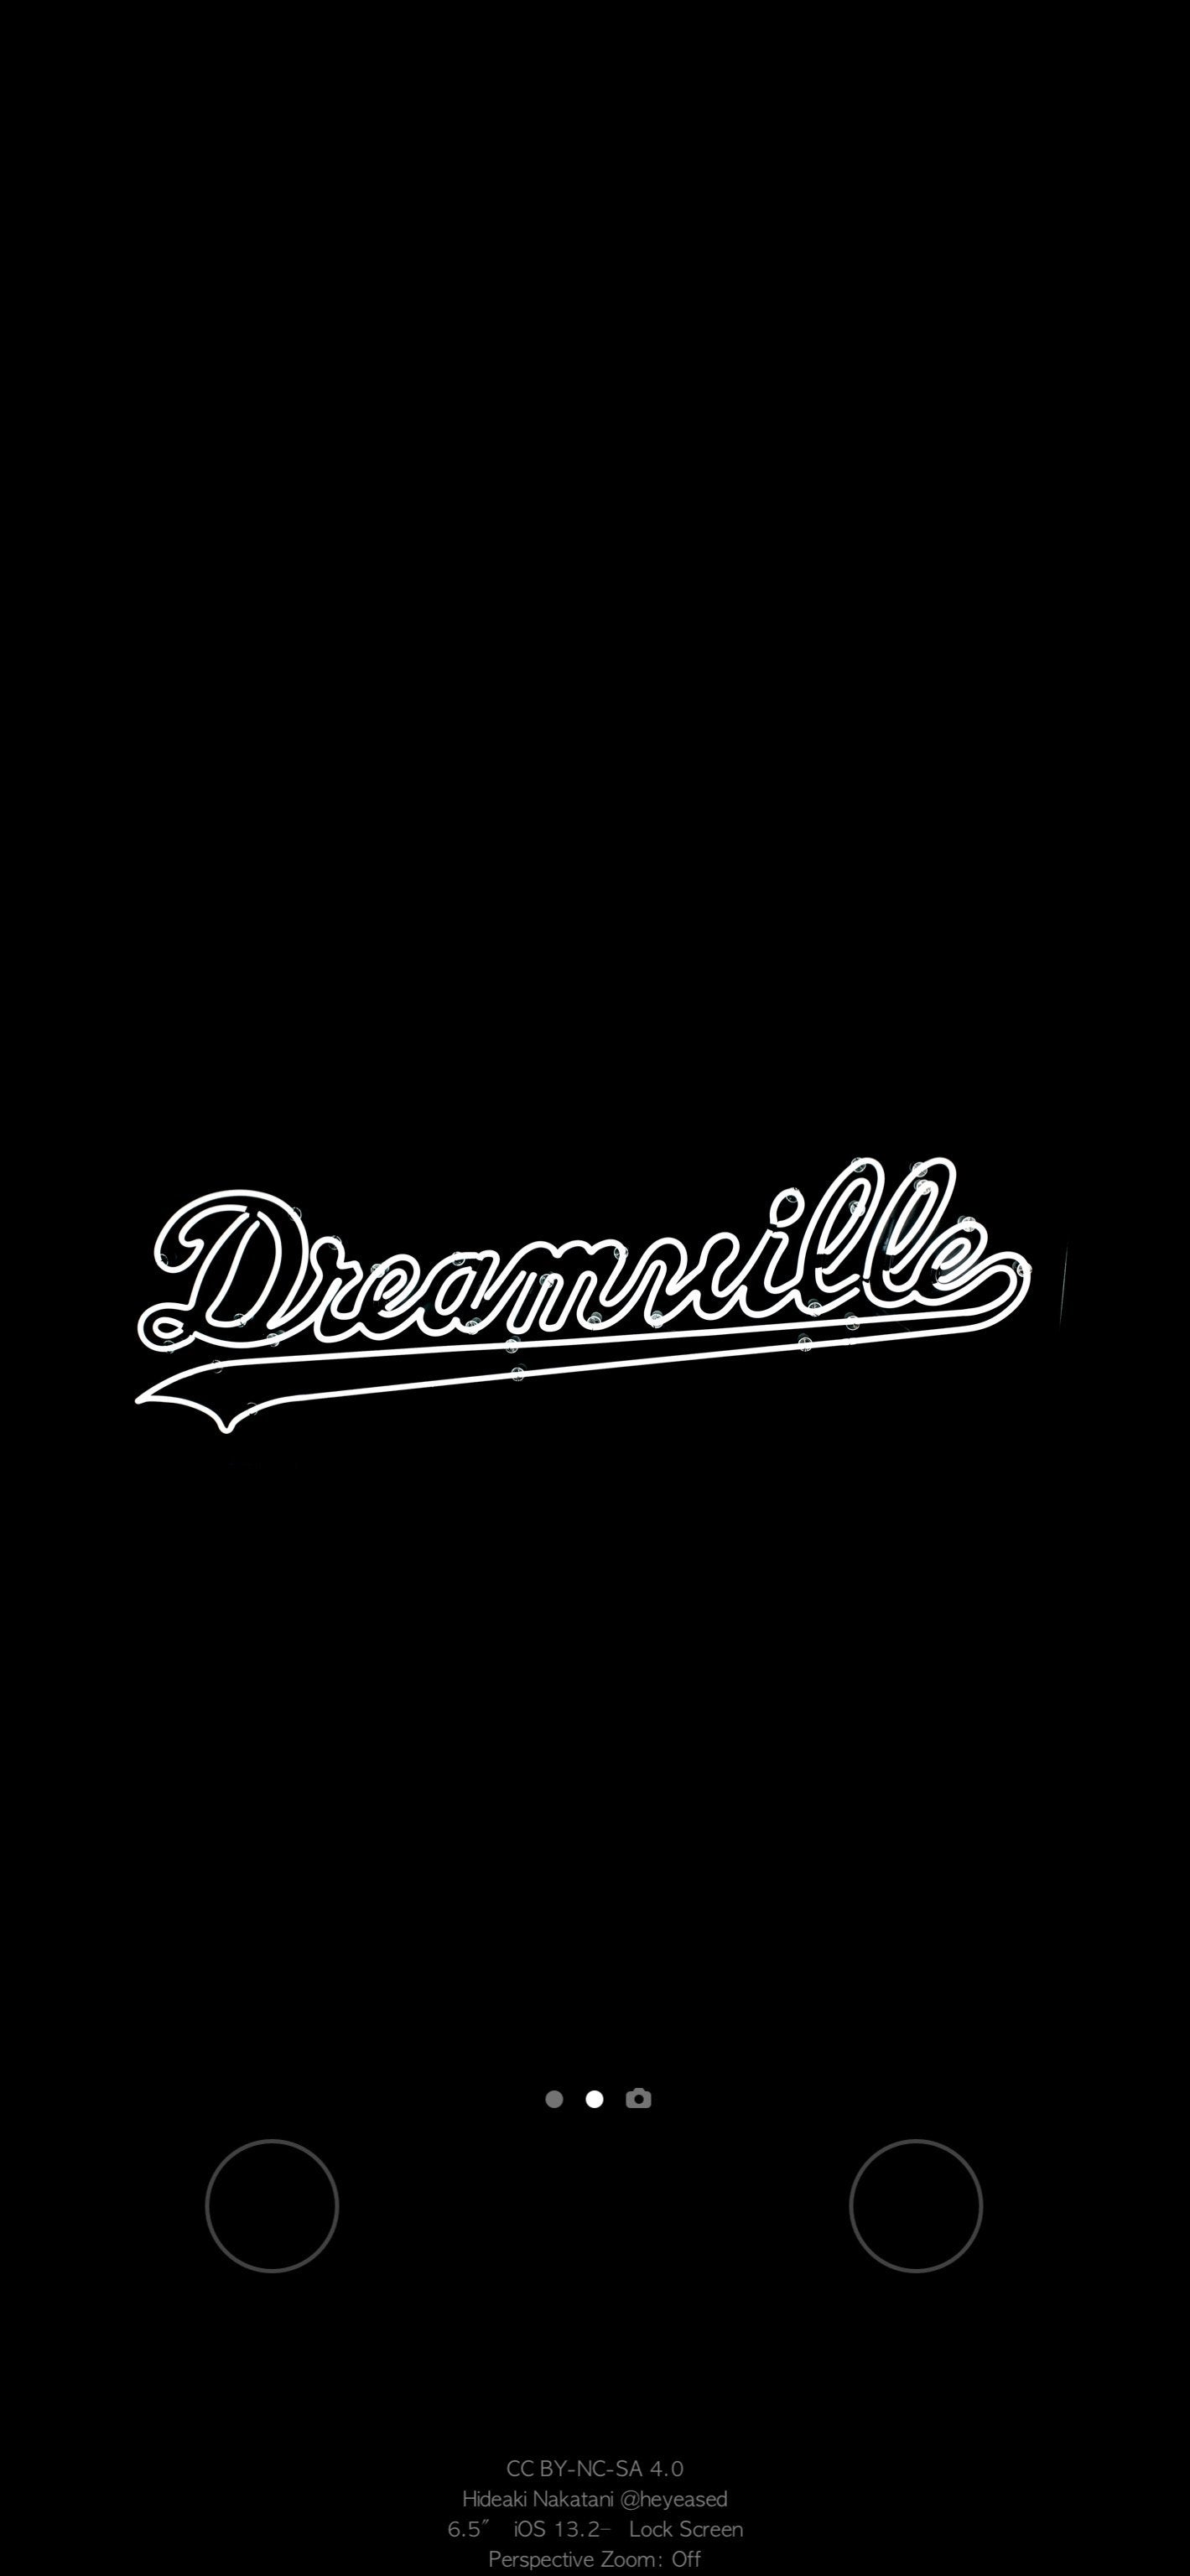 Dreamville Wallpaper For Those J Cole Fans R